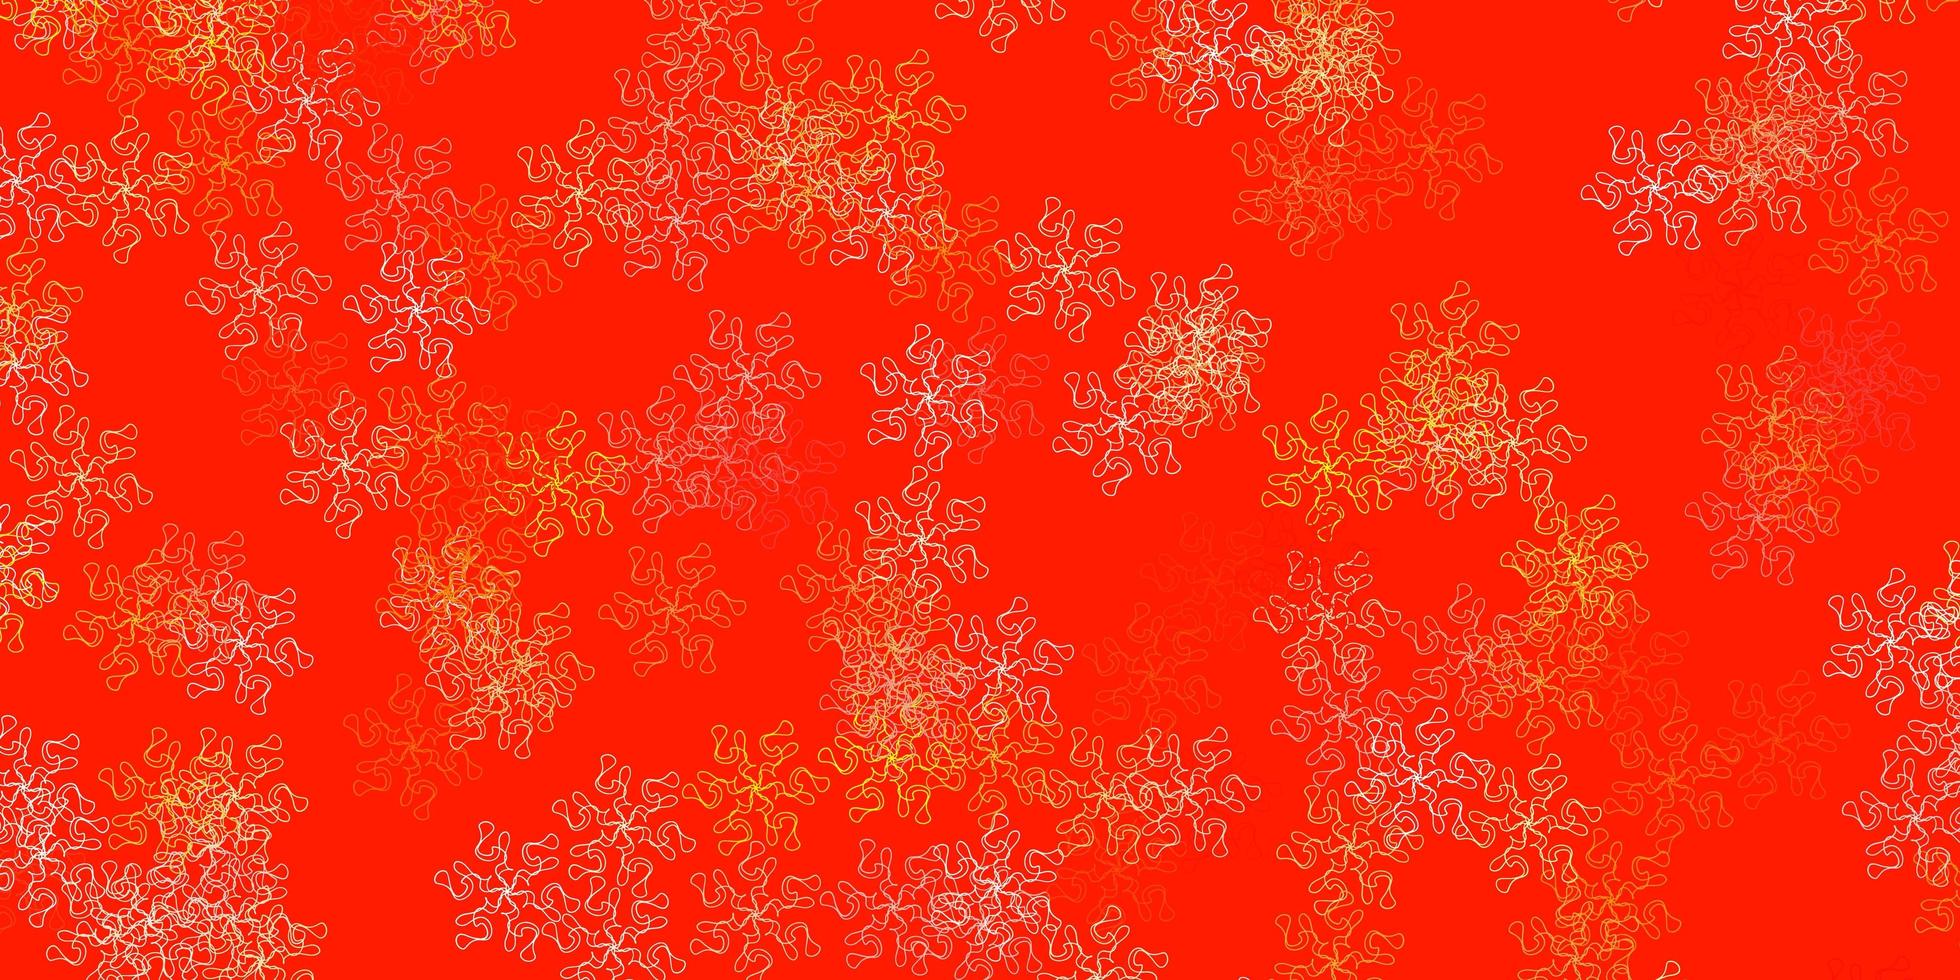 motif de doodle vecteur orange clair avec des fleurs.